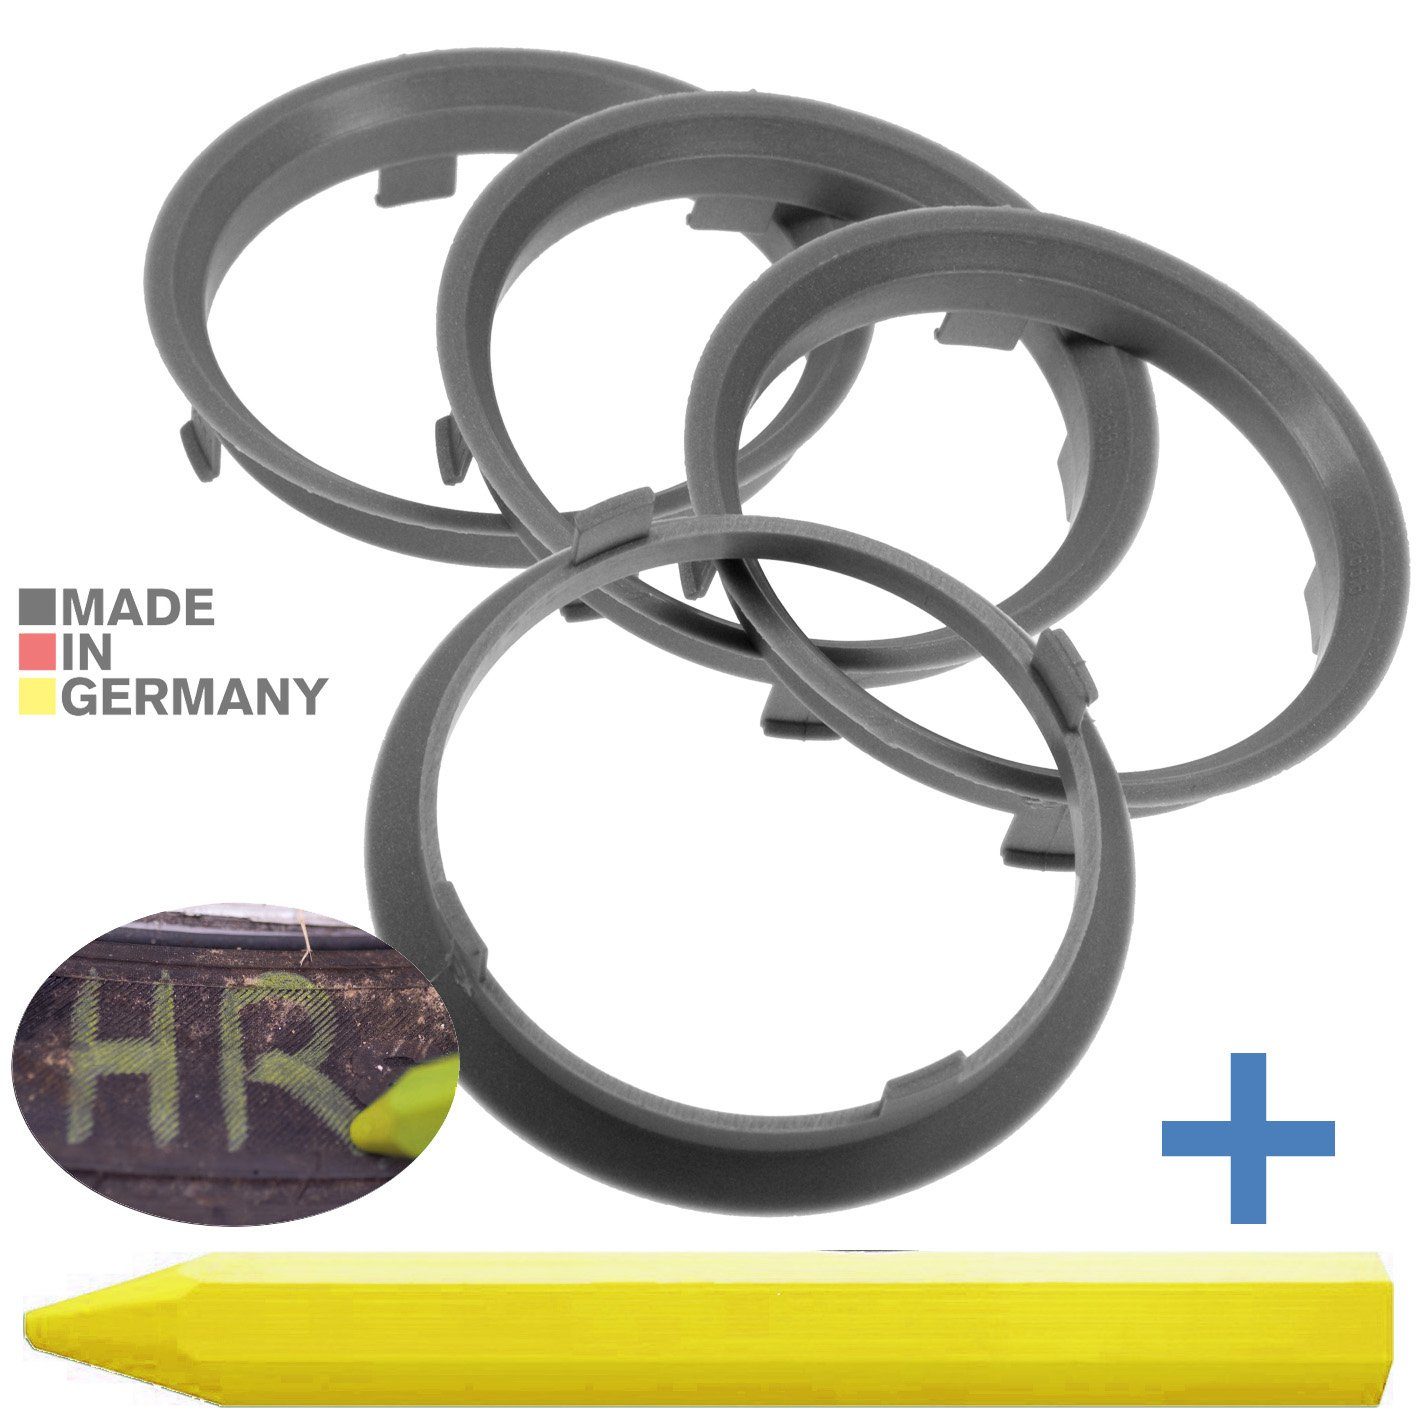 RKC Reifenstift 4X Zentrierringe Silber Felgen Ringe + 1x Reifen Kreide Fett Stift, Maße: 70,1 x 66,6 mm